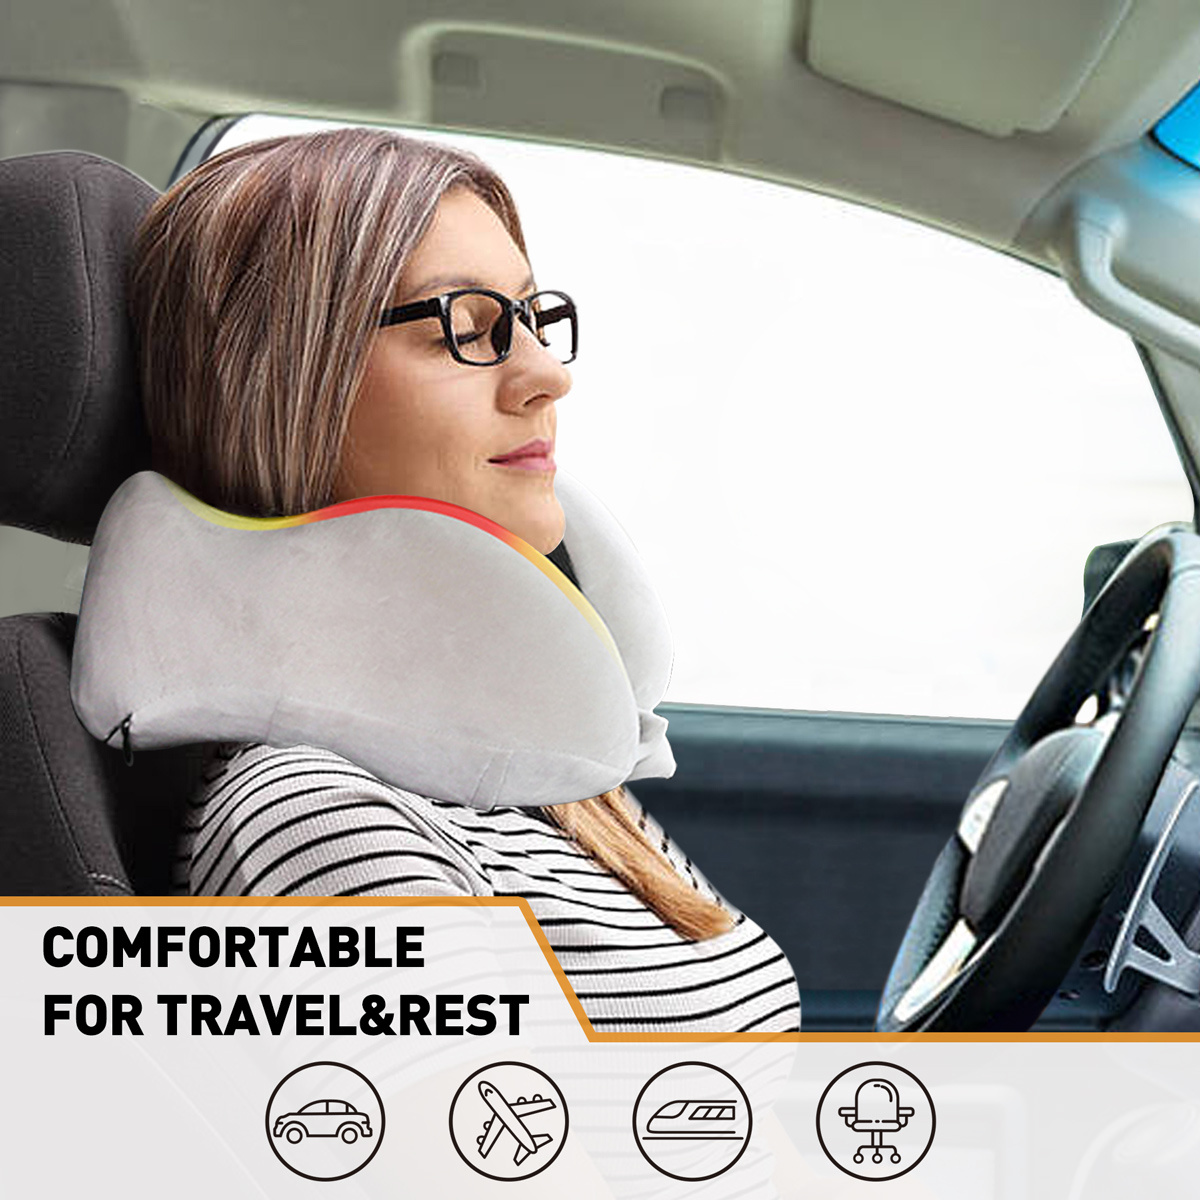  Almohada de cuello para viajes, proporciona apoyo a la cabeza,  el cuello y la barbilla en cualquier posición de sueño en vuelos de  automóvil y hogar, cómoda almohada de viaje en